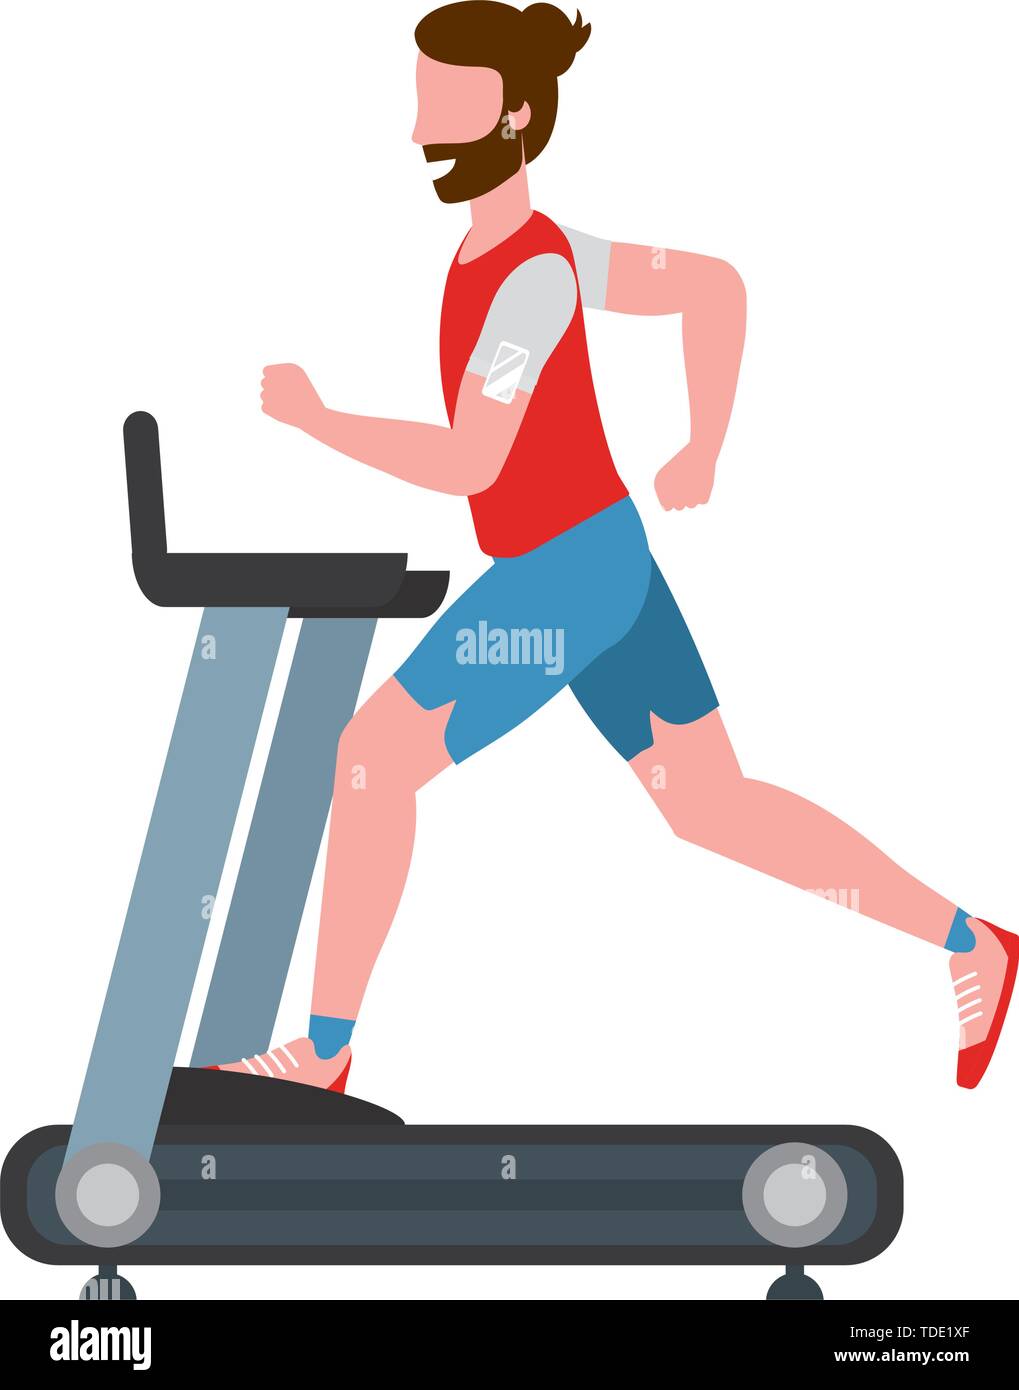 Esercizio fitness uomo correre su tapis roulant sano allenamento fit  lifestyle cartoon illustrazione vettoriale graphic design Immagine e  Vettoriale - Alamy